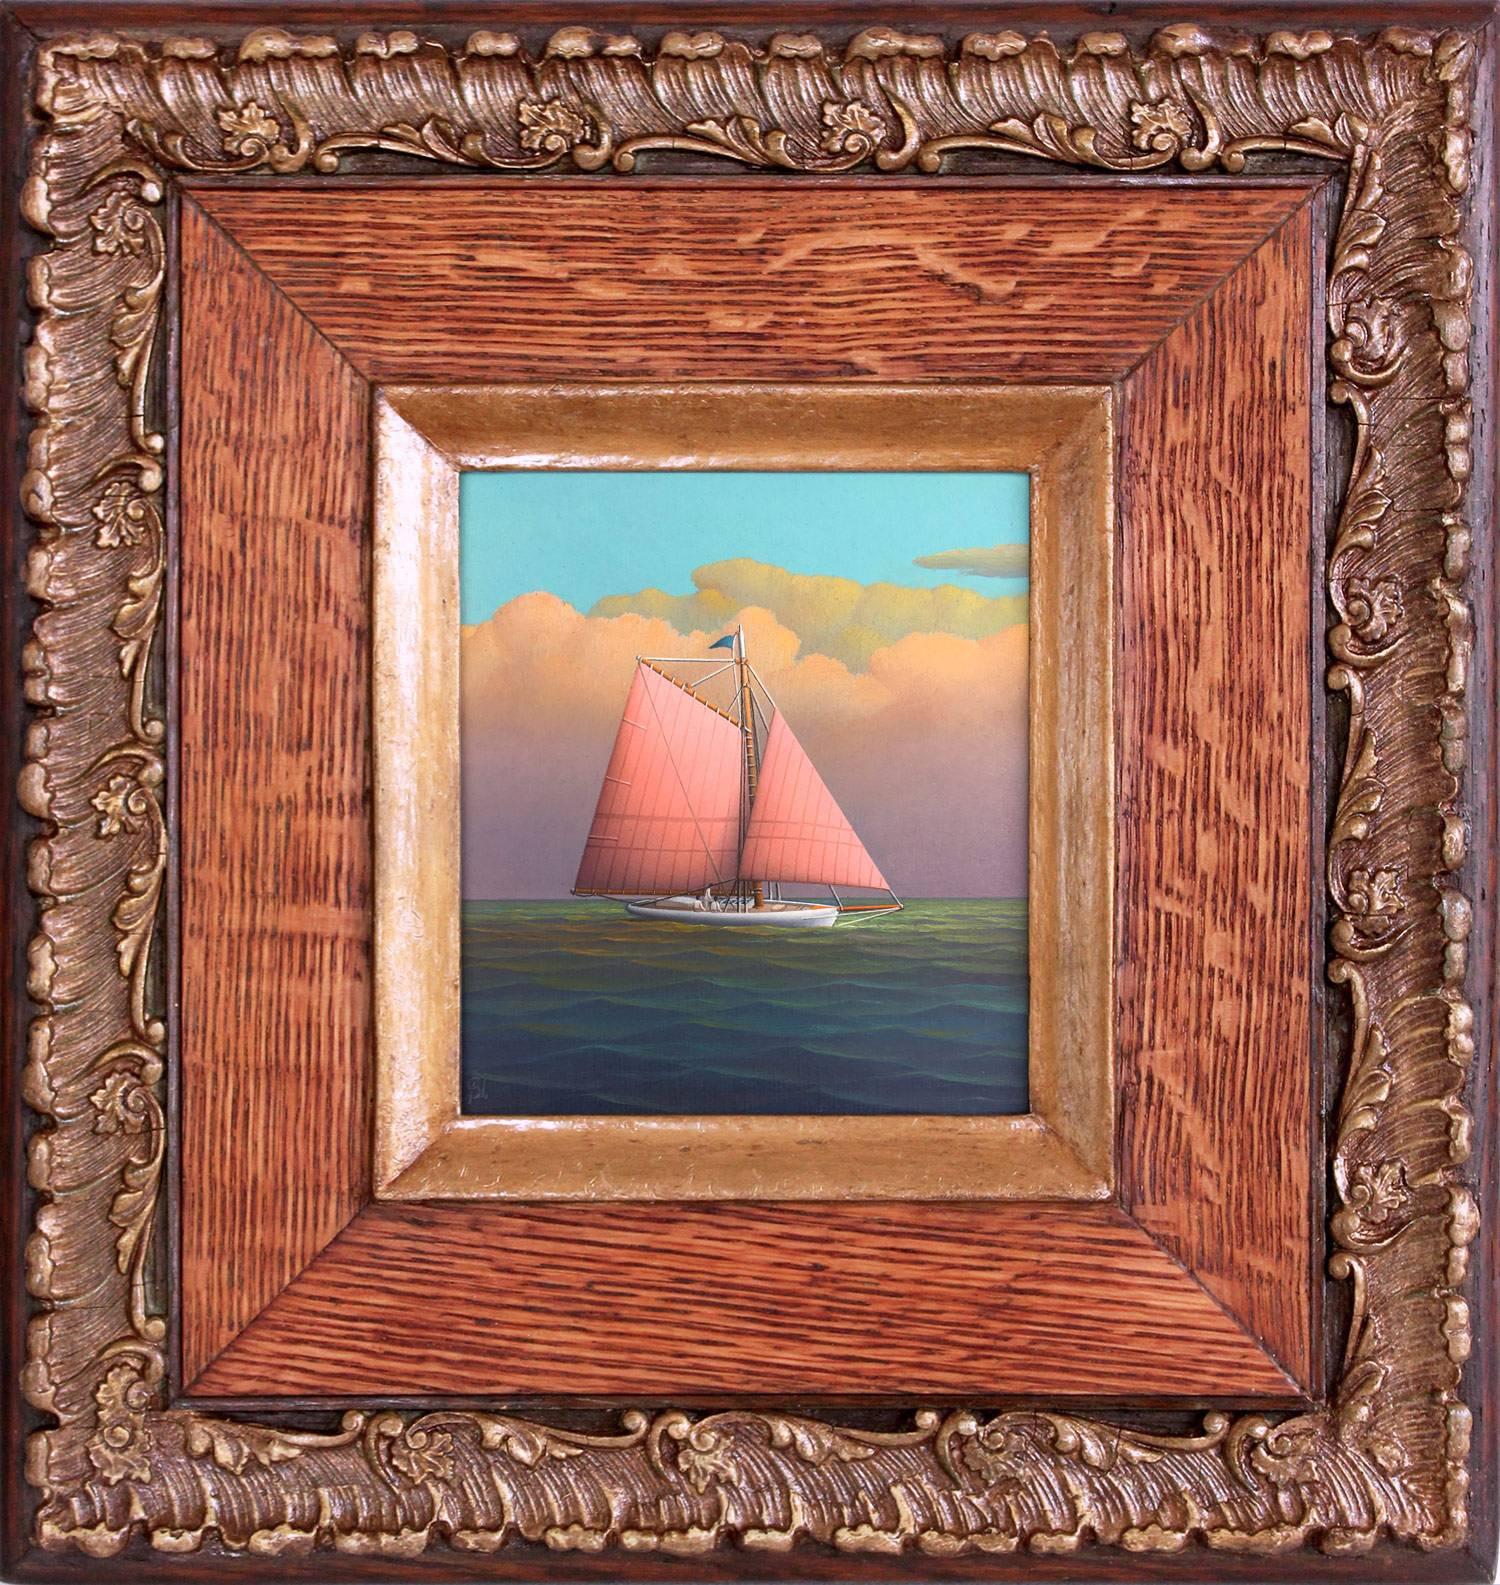 Landscape Painting George Nemethy - « Tranquil Sailing », peinture à l'huile réaliste sur toile représentant un voilier en mer ouverte